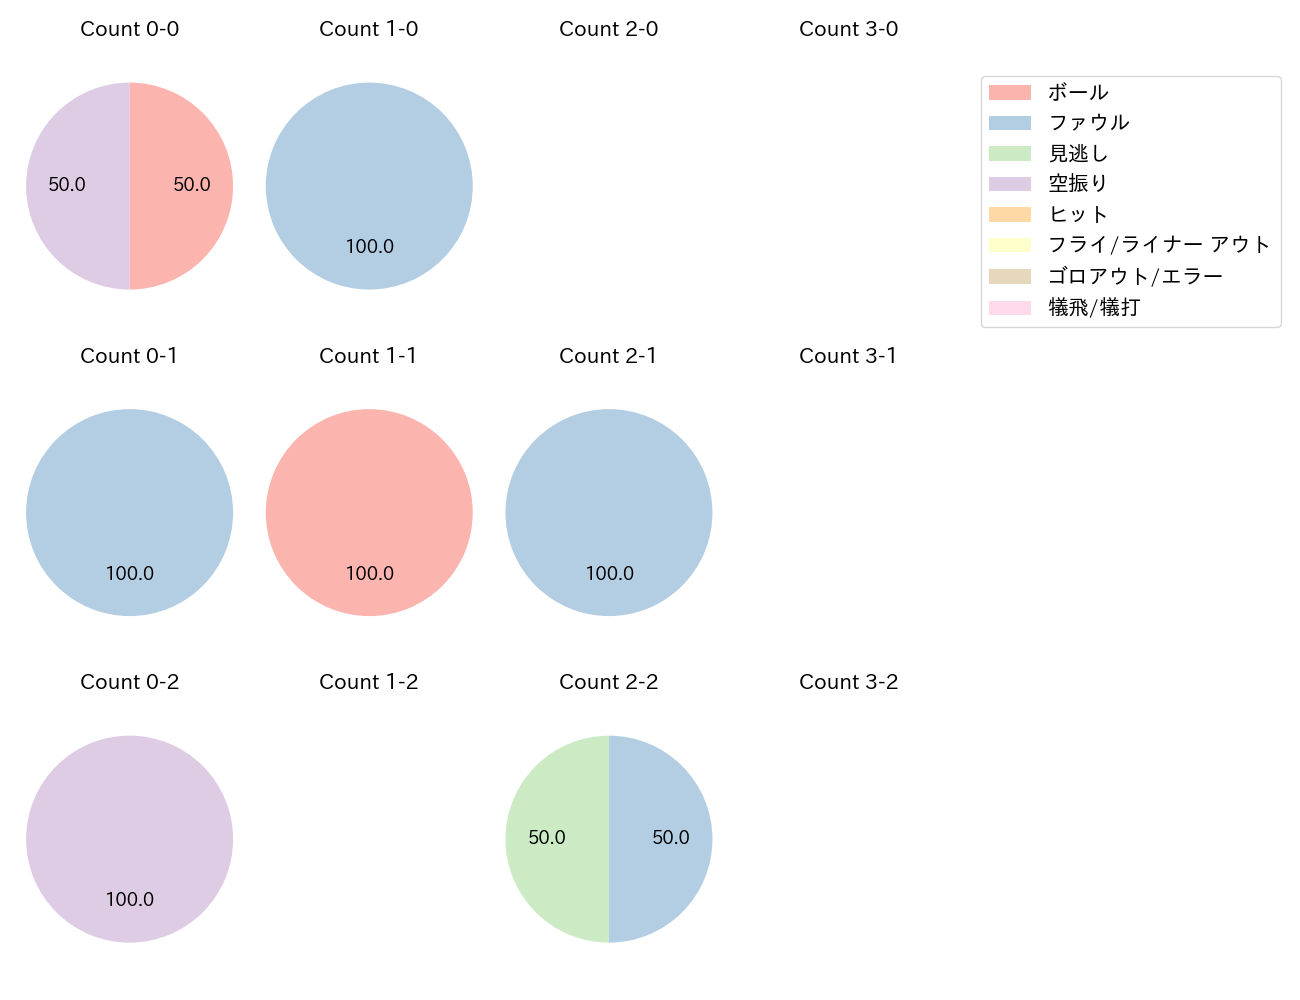 松原 聖弥の球数分布(2022年9月)